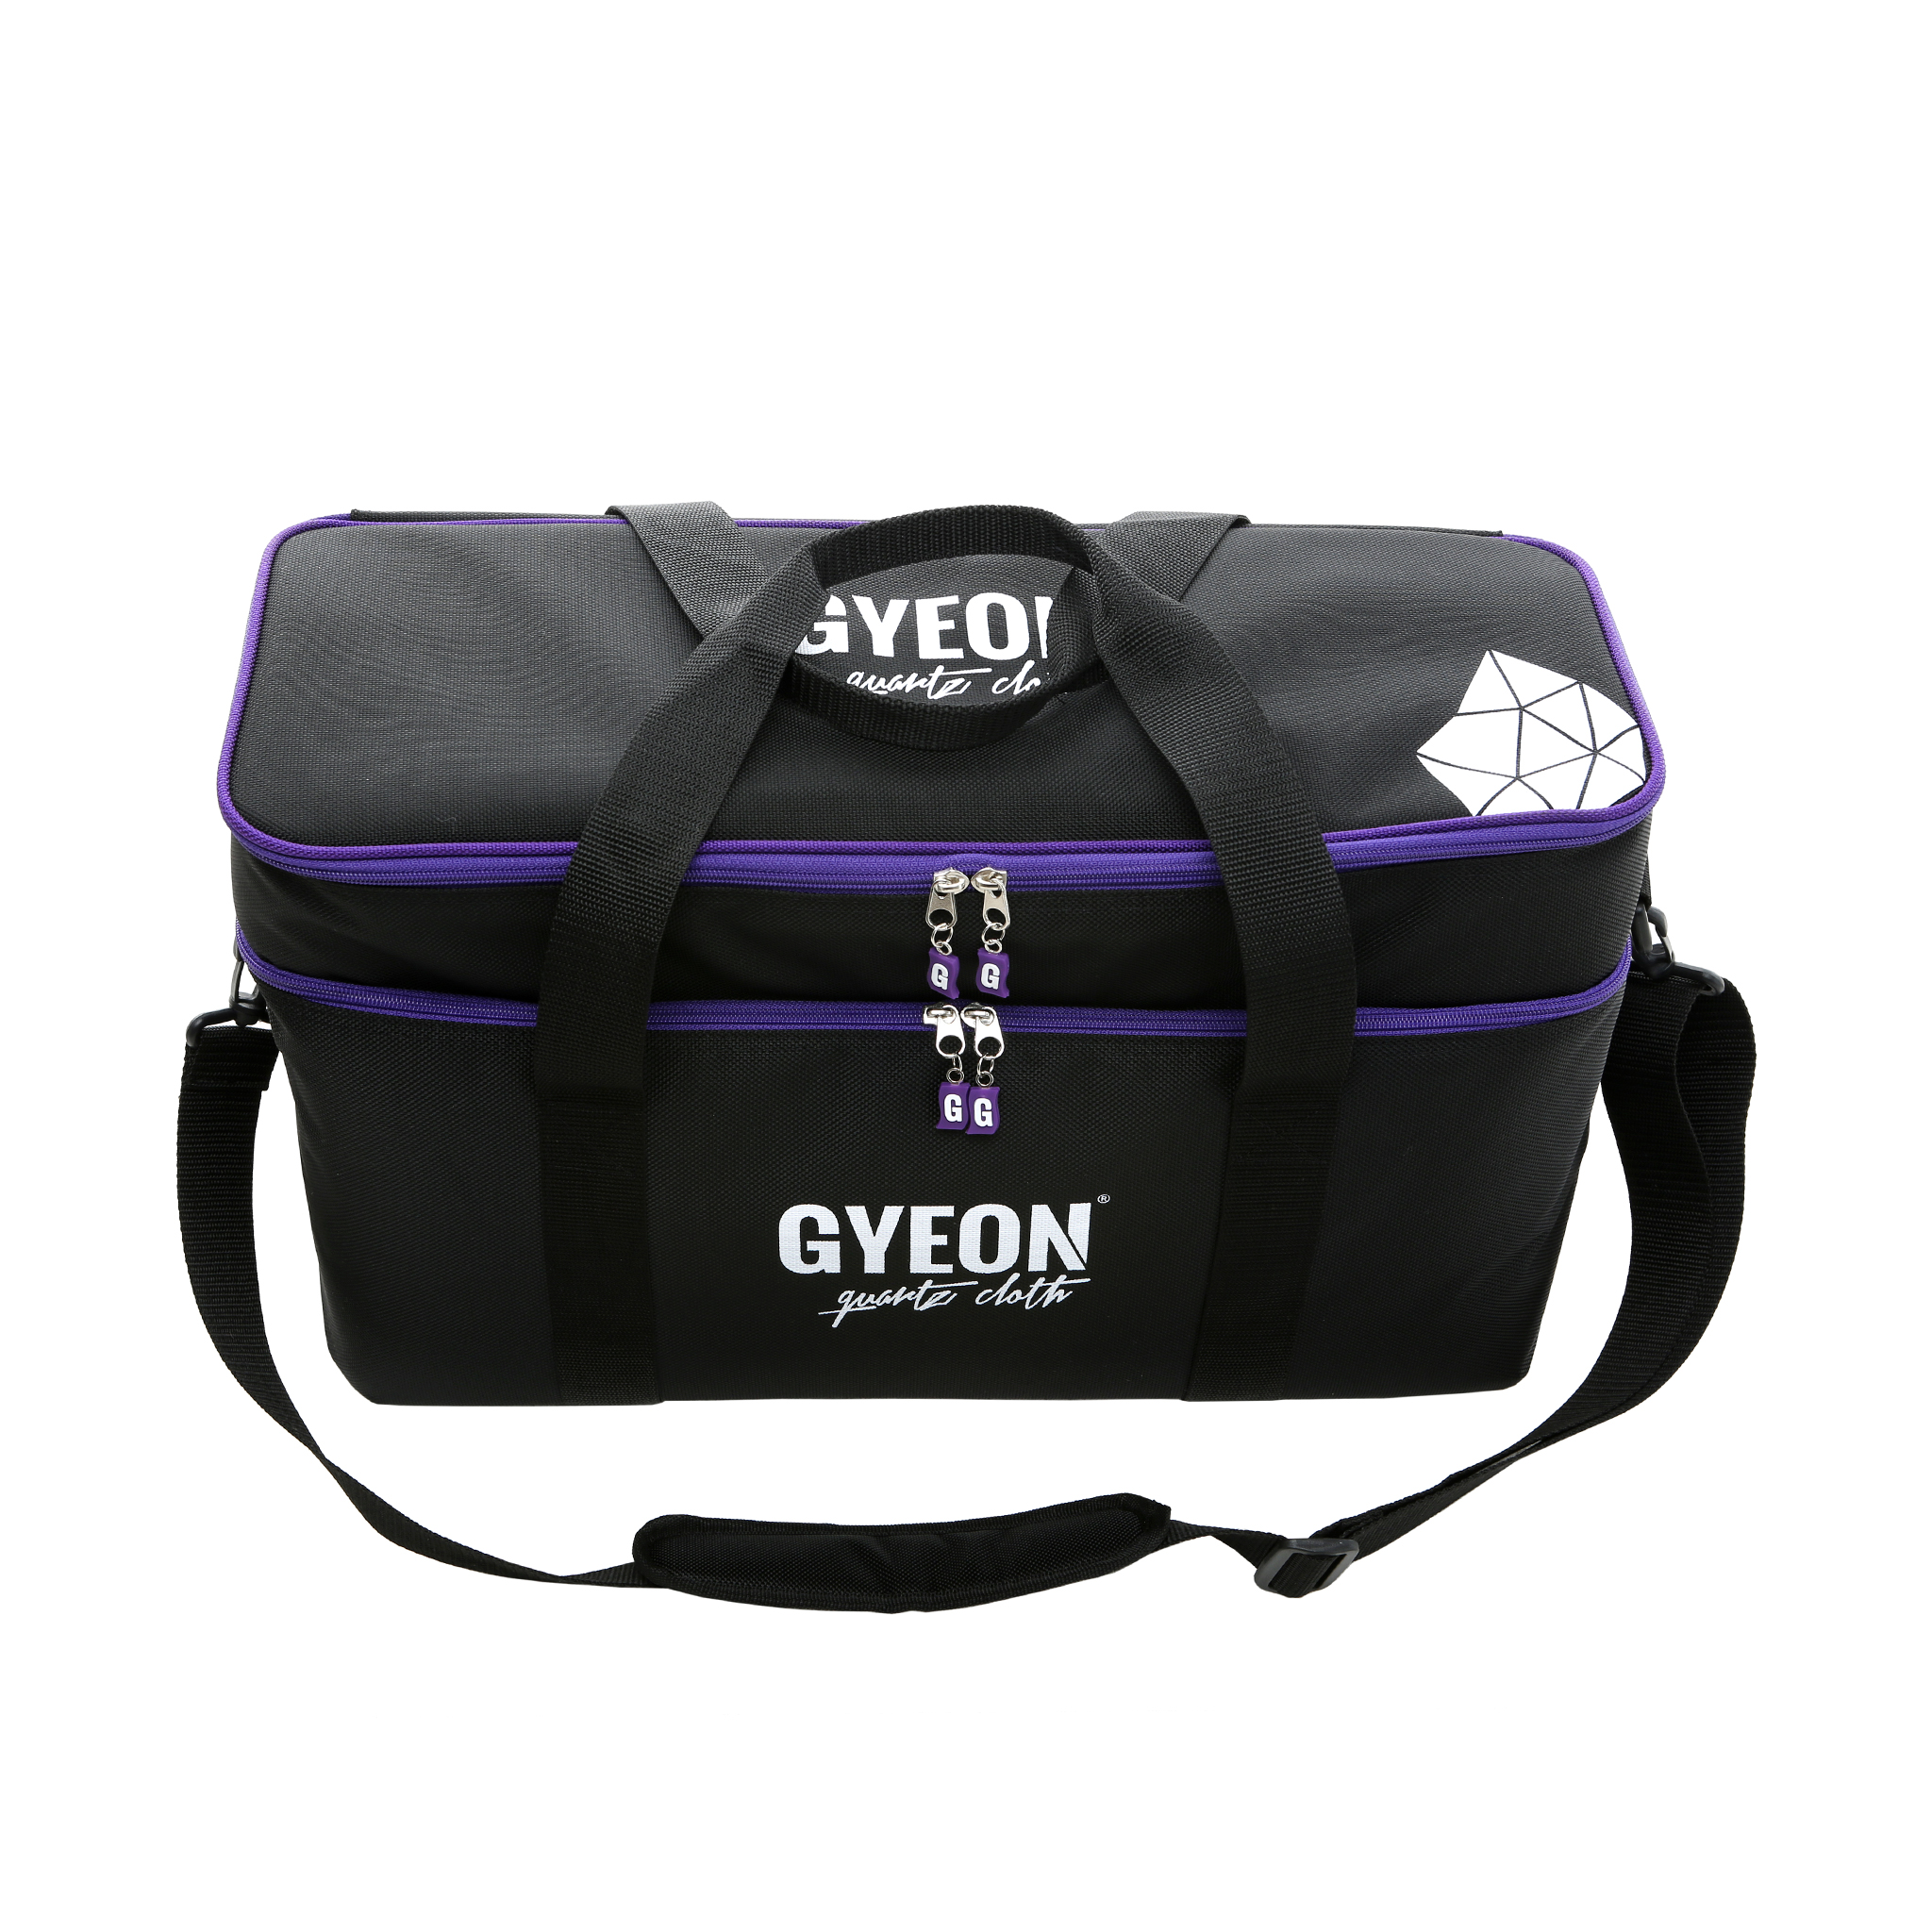 Сумка detail. Сумка детейлера органайзер. Gyeon сумка для выездного детейлинга. Q2m detail Bag big Gyeon. Сумка детейлера LERATON.